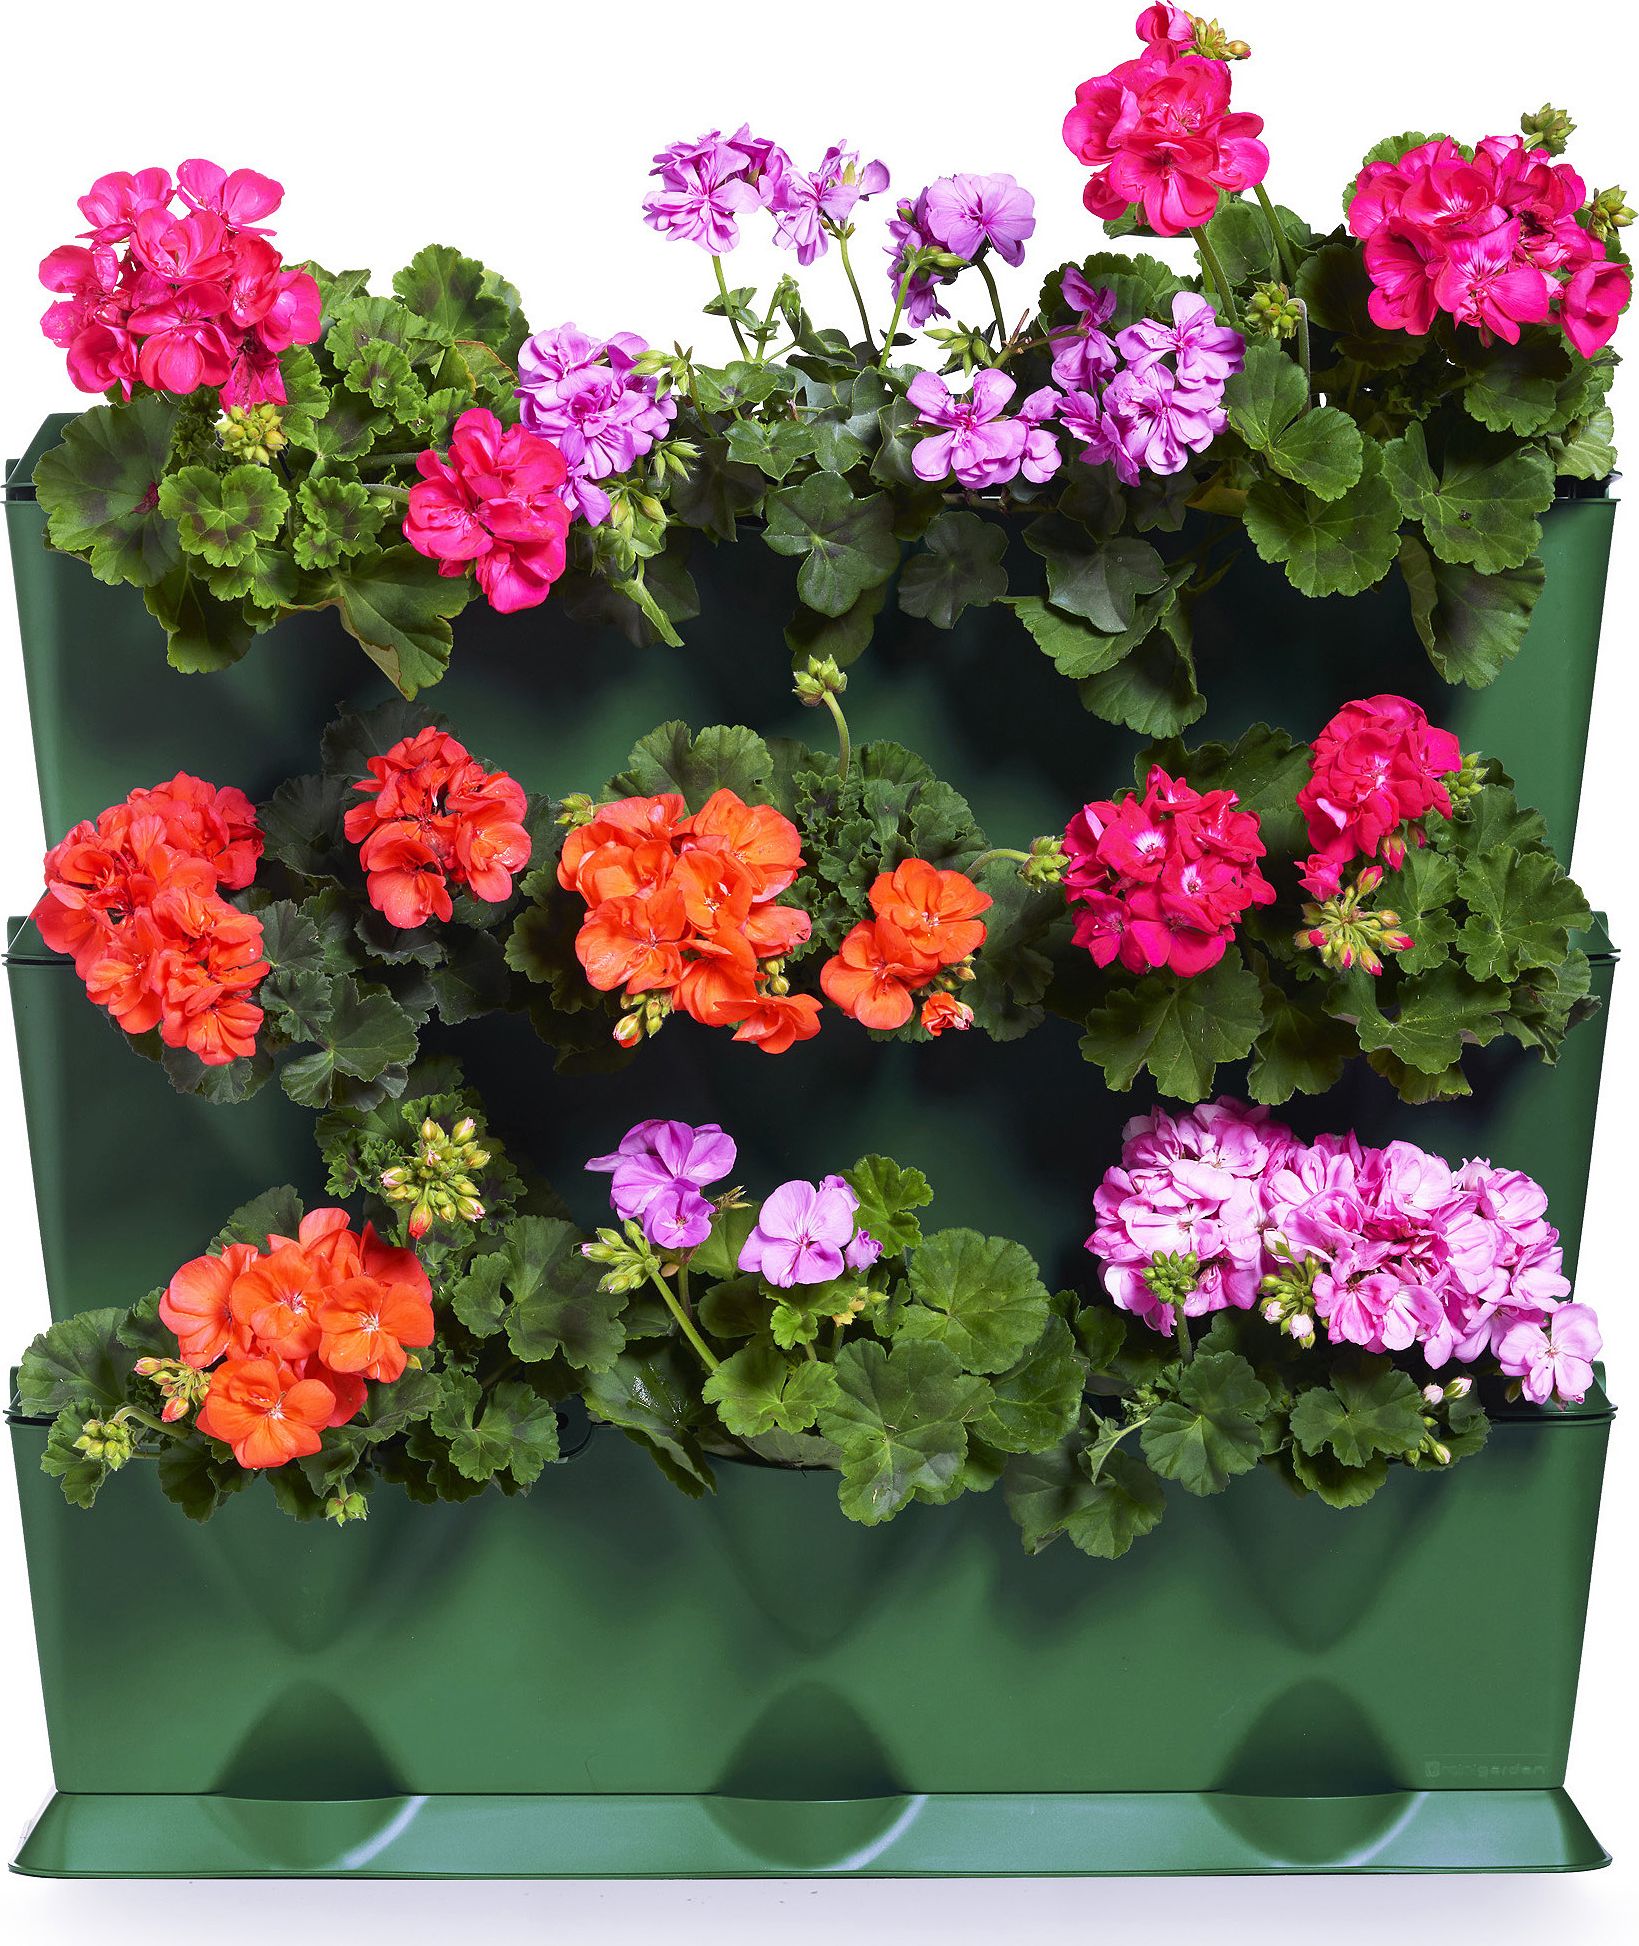 Фото - Підставка для квітів Minigarden Minigarden Vertical zielony - zielnik, modułowy ogród domowy, z